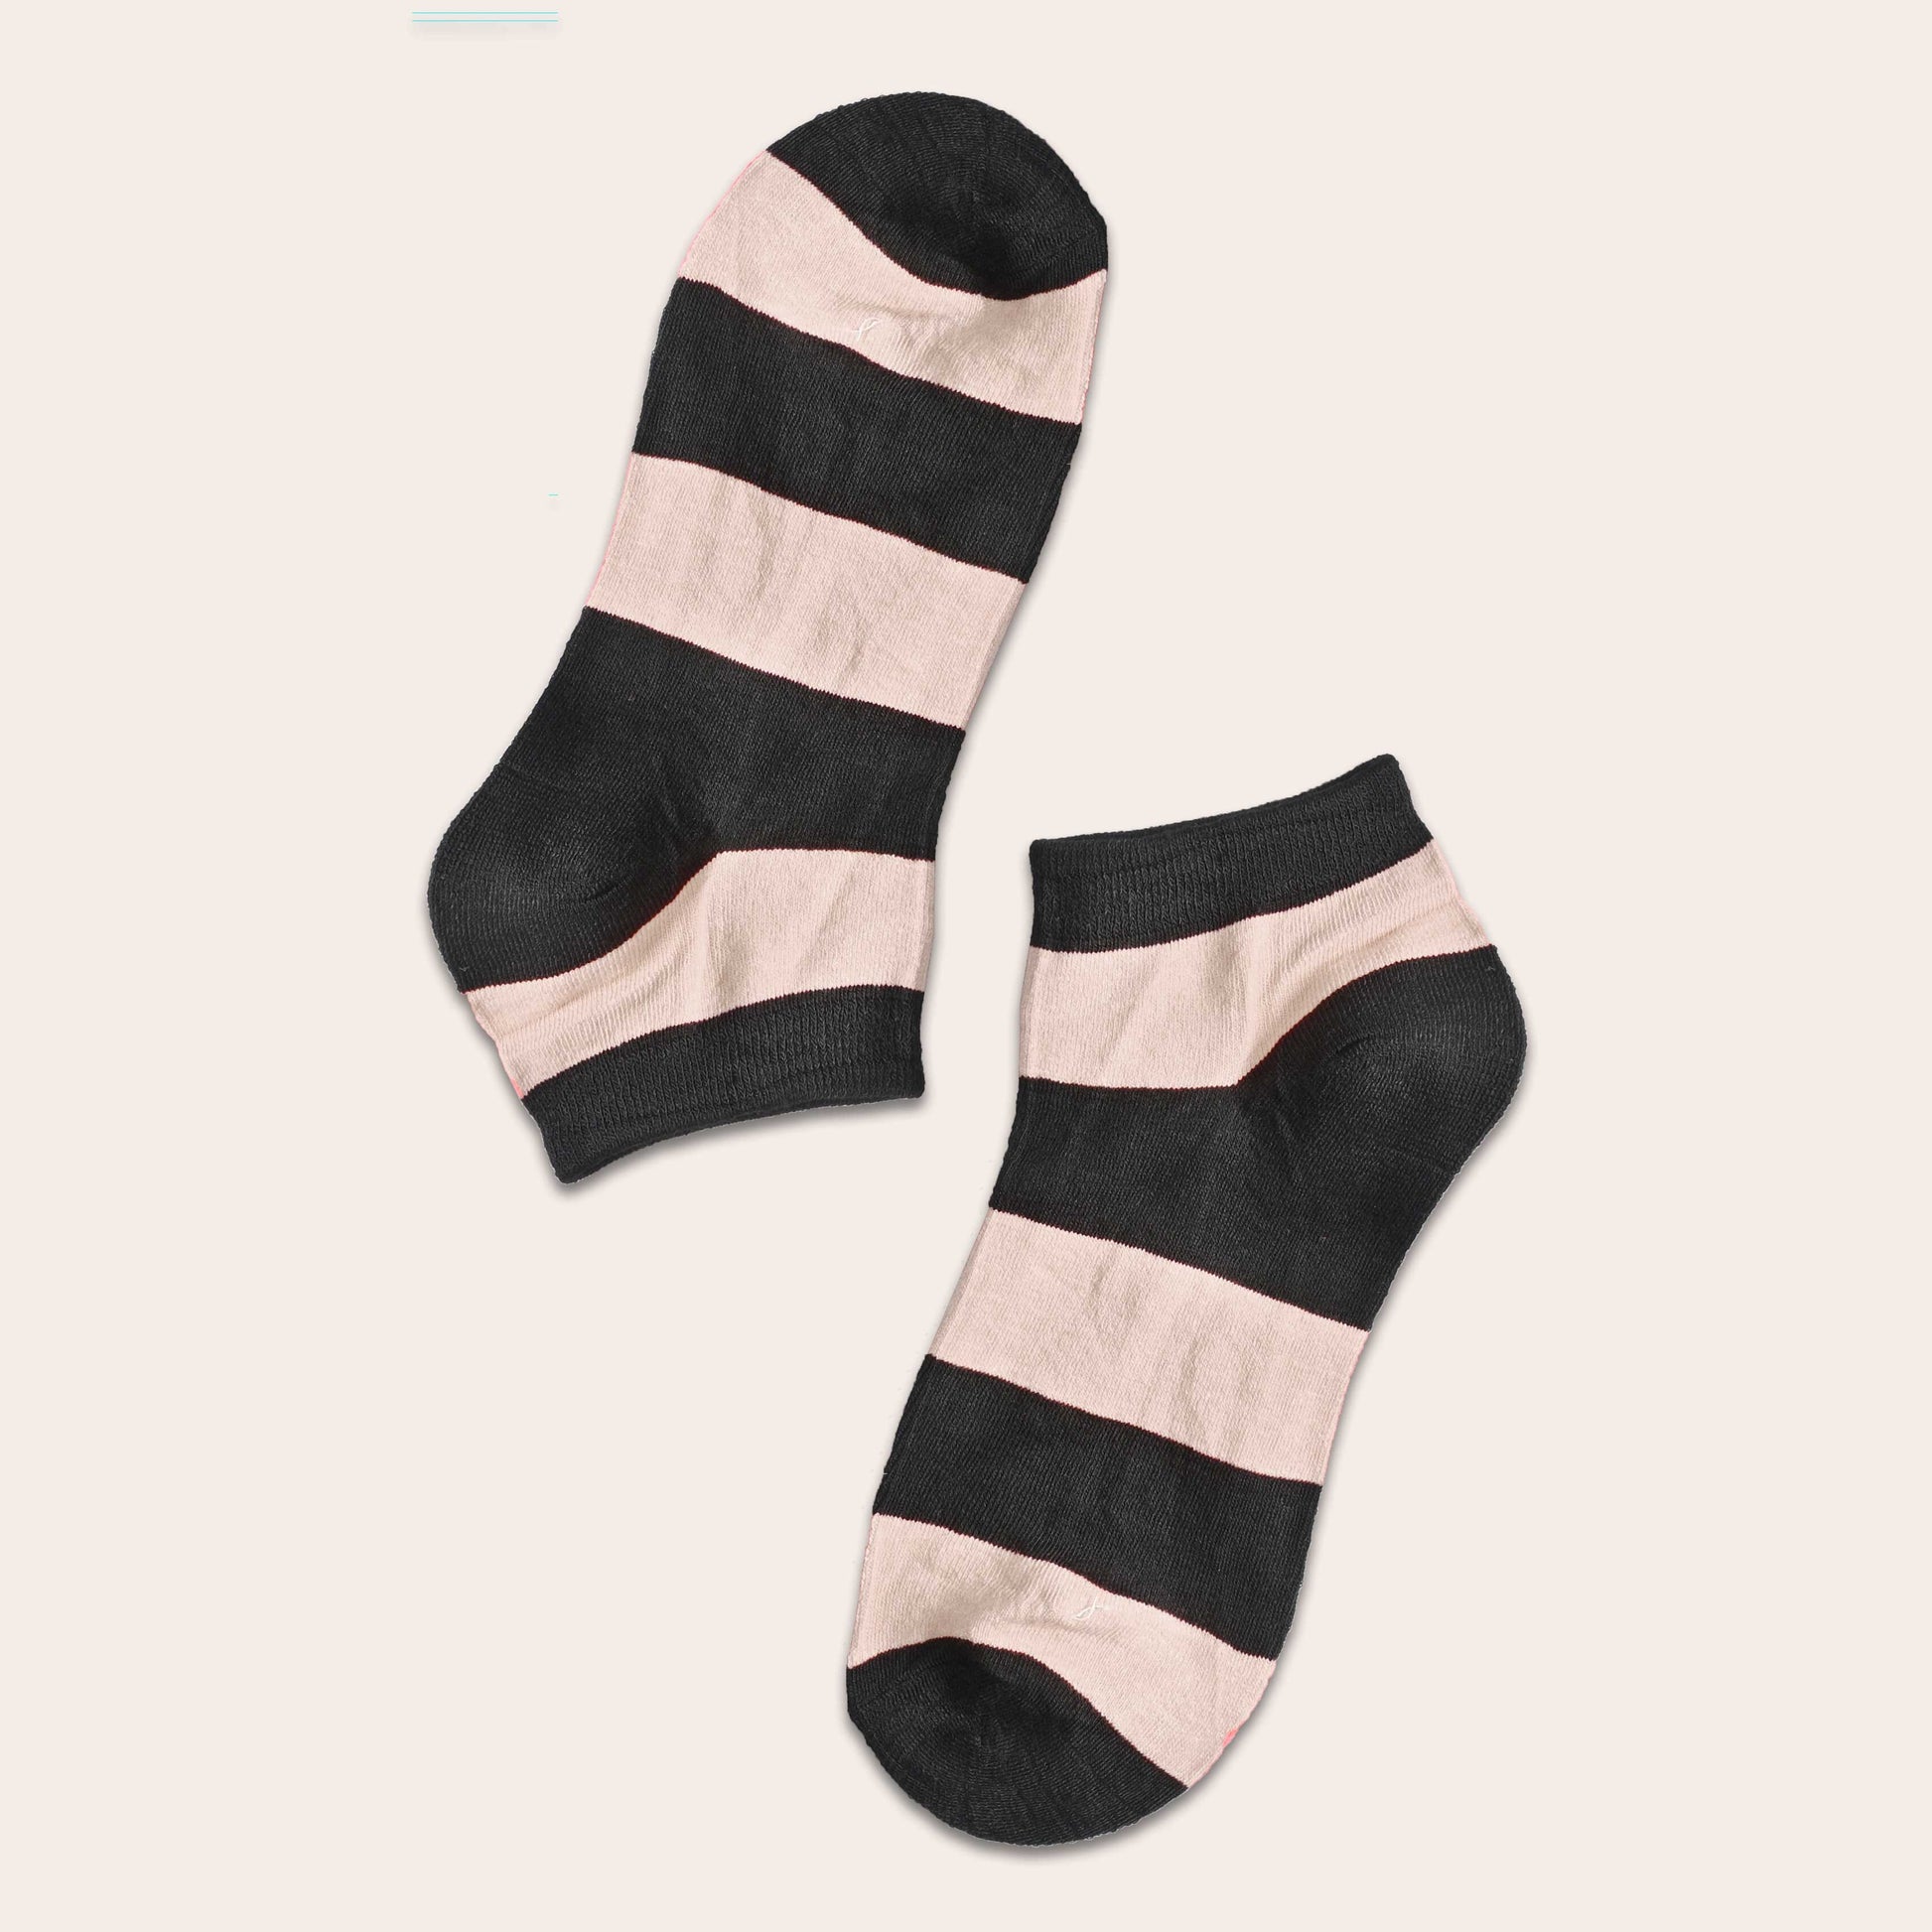 Tlia Men's Fashion Anklet Socks Socks SRL EUR 38-43 Cream D2